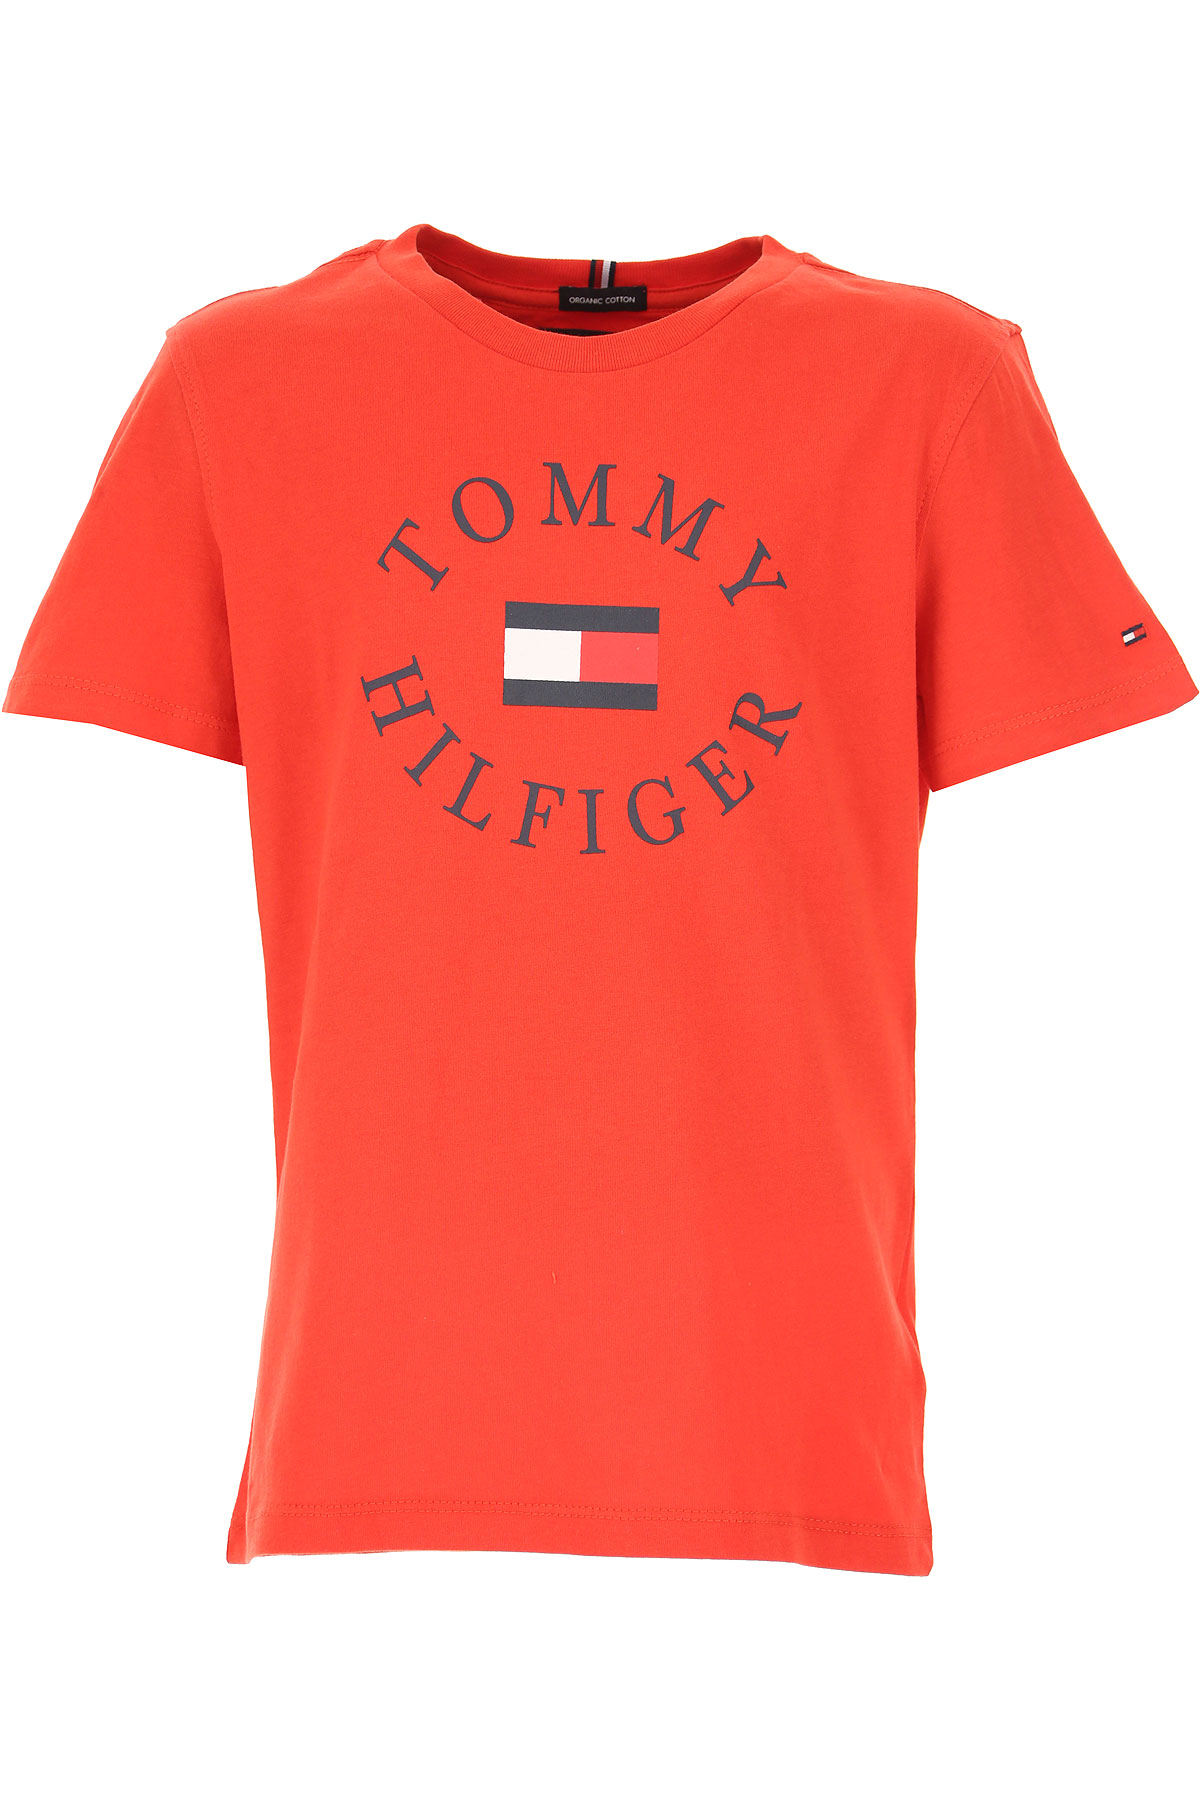 Tommy Hilfiger Kinder T-Shirt für Jungen Günstig im Sale, Rot, Baumwolle, 2017, 10Y 14Y 16Y 4Y 6Y 8Y